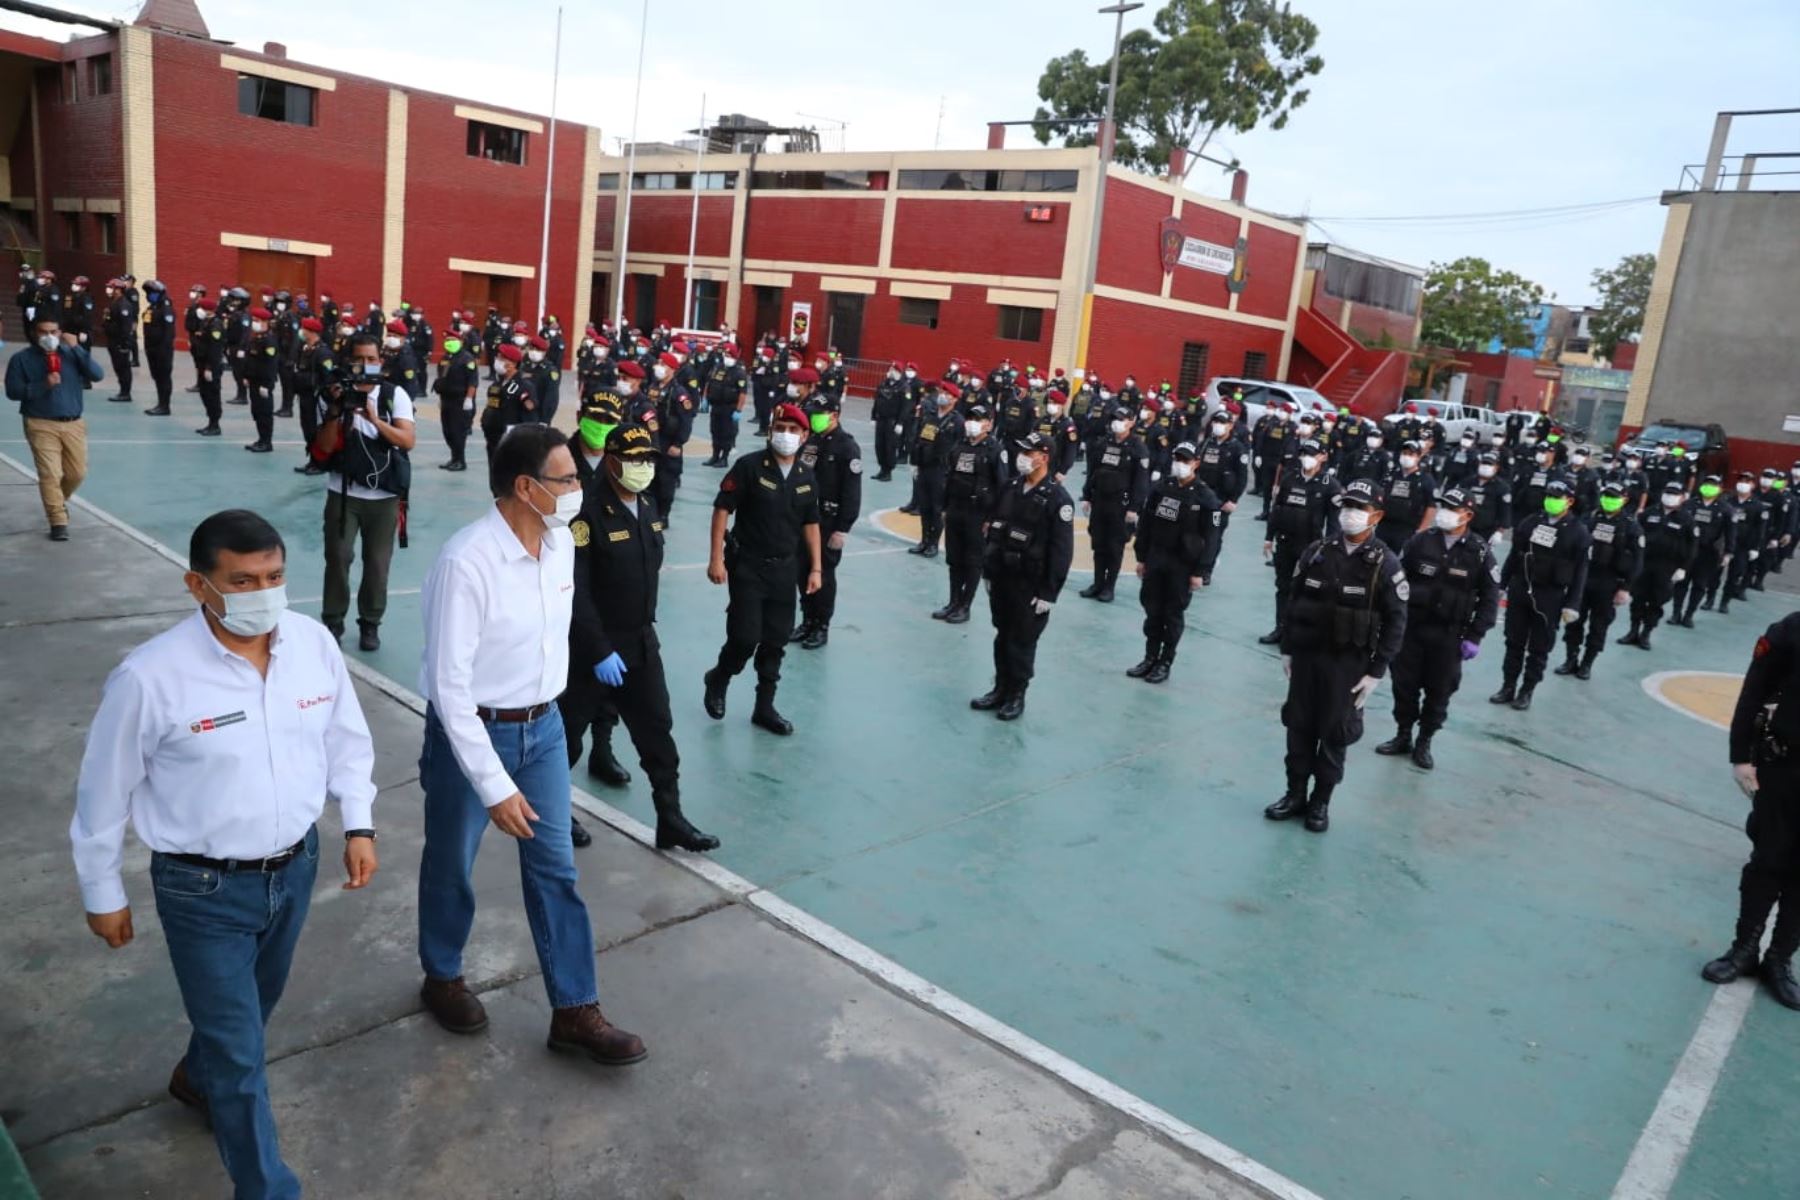 Presidente Martín Vizcarra expresa su reconocimiento a la labor de la Policía Nacional frente al coronavirus.